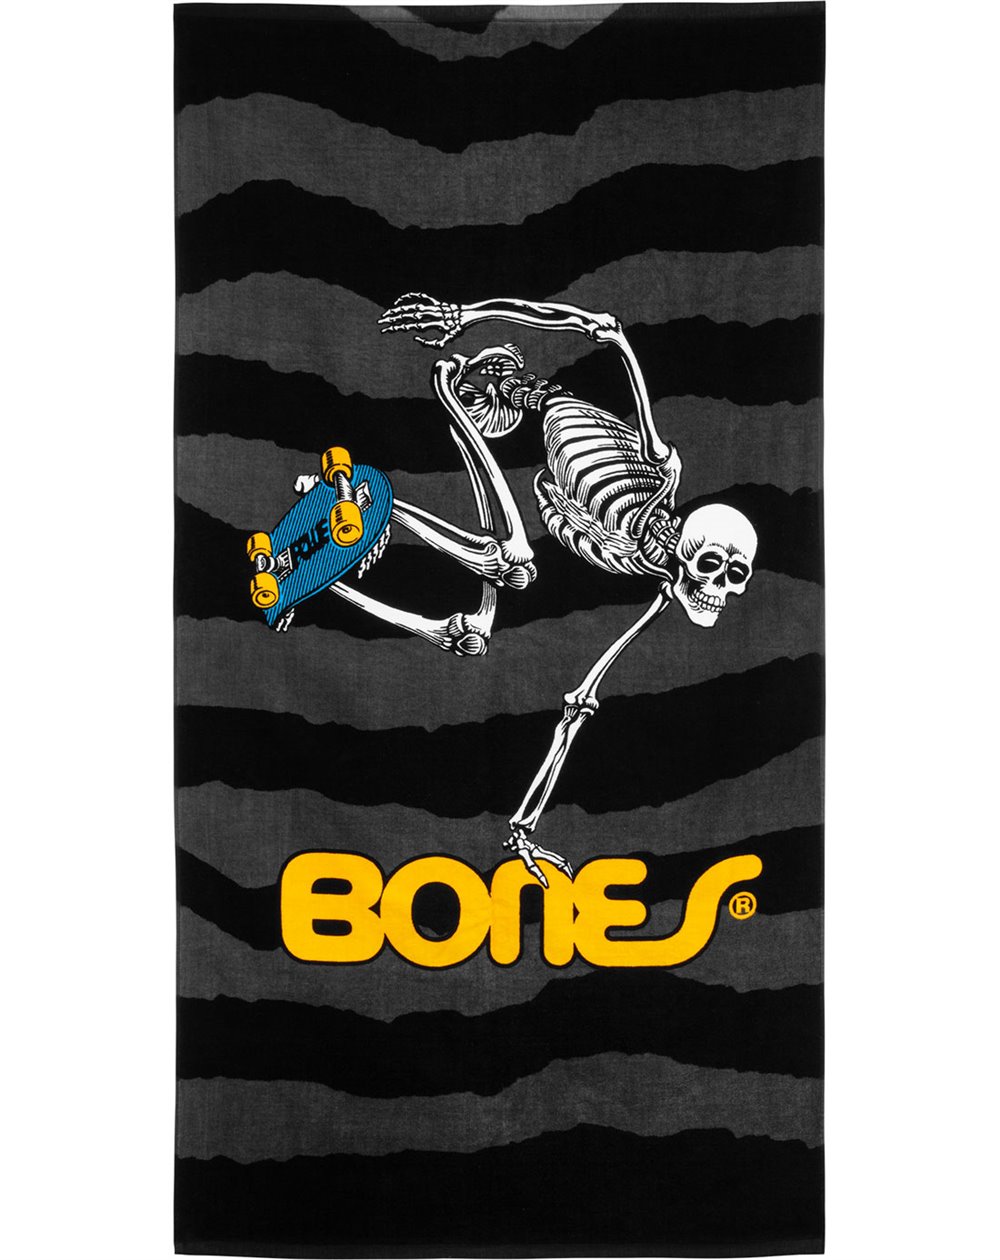 Powell Peralta Sk8board Skeleton Serviette de Plage